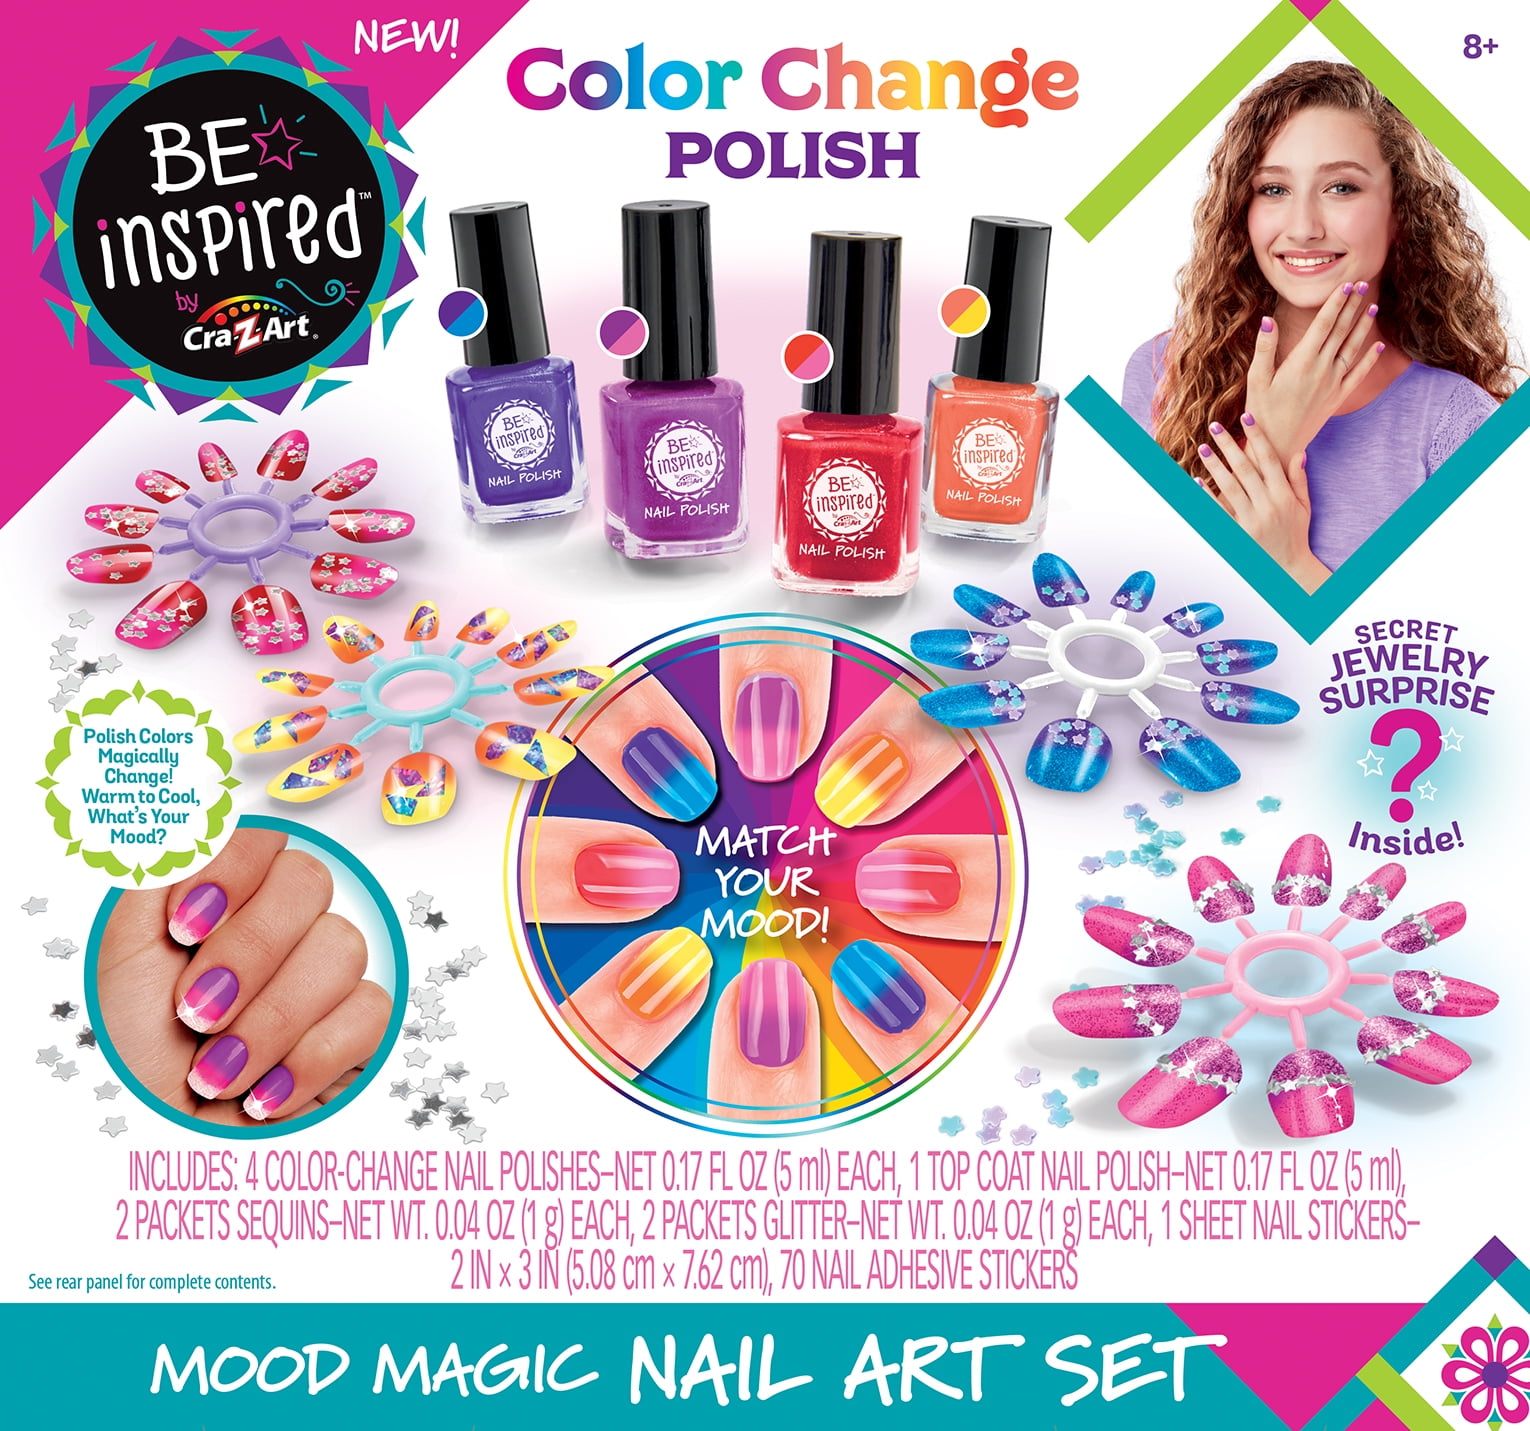 Cra-Z-Art Be Inspired Color Changing Mood Magic Nail Polish Salon Set -  